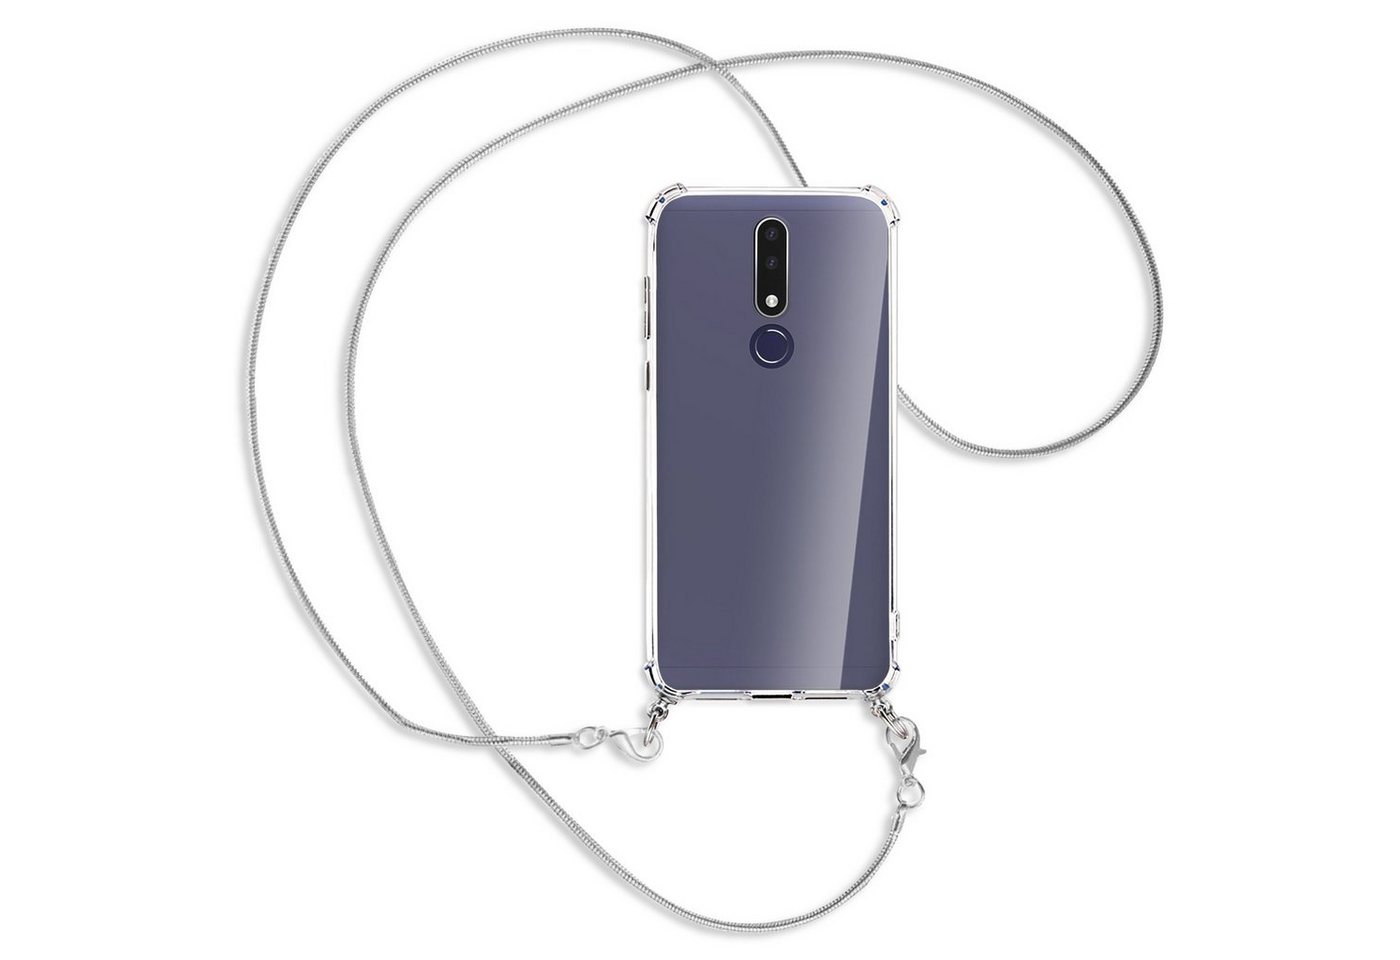 mtb more energy Handykette für Nokia 3.1 Plus (TA-1118, 6.0) [MK], Umhängehülle mit Metallkette [NC-364-MK] von mtb more energy